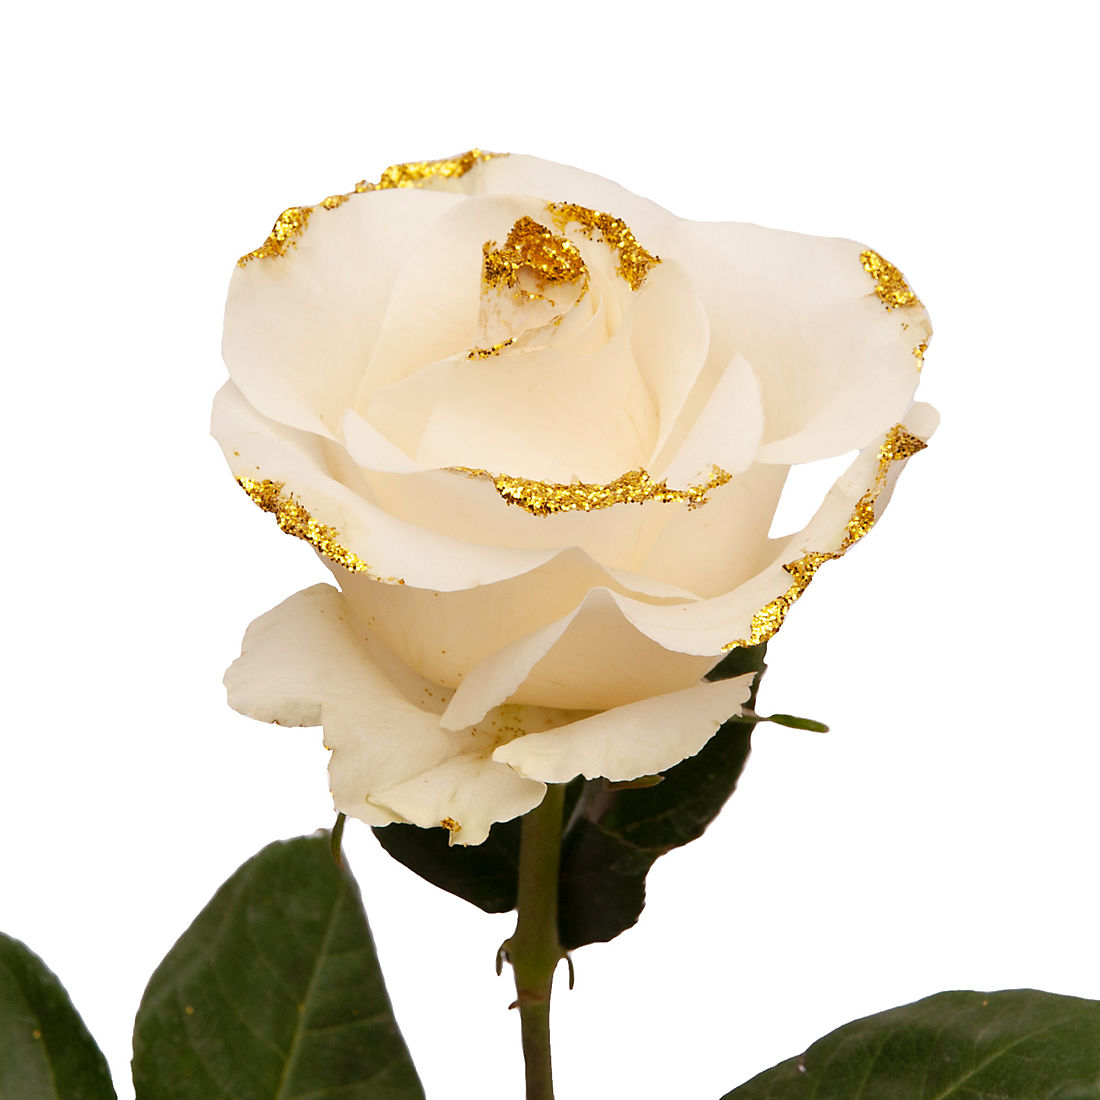 White Glitter Roses